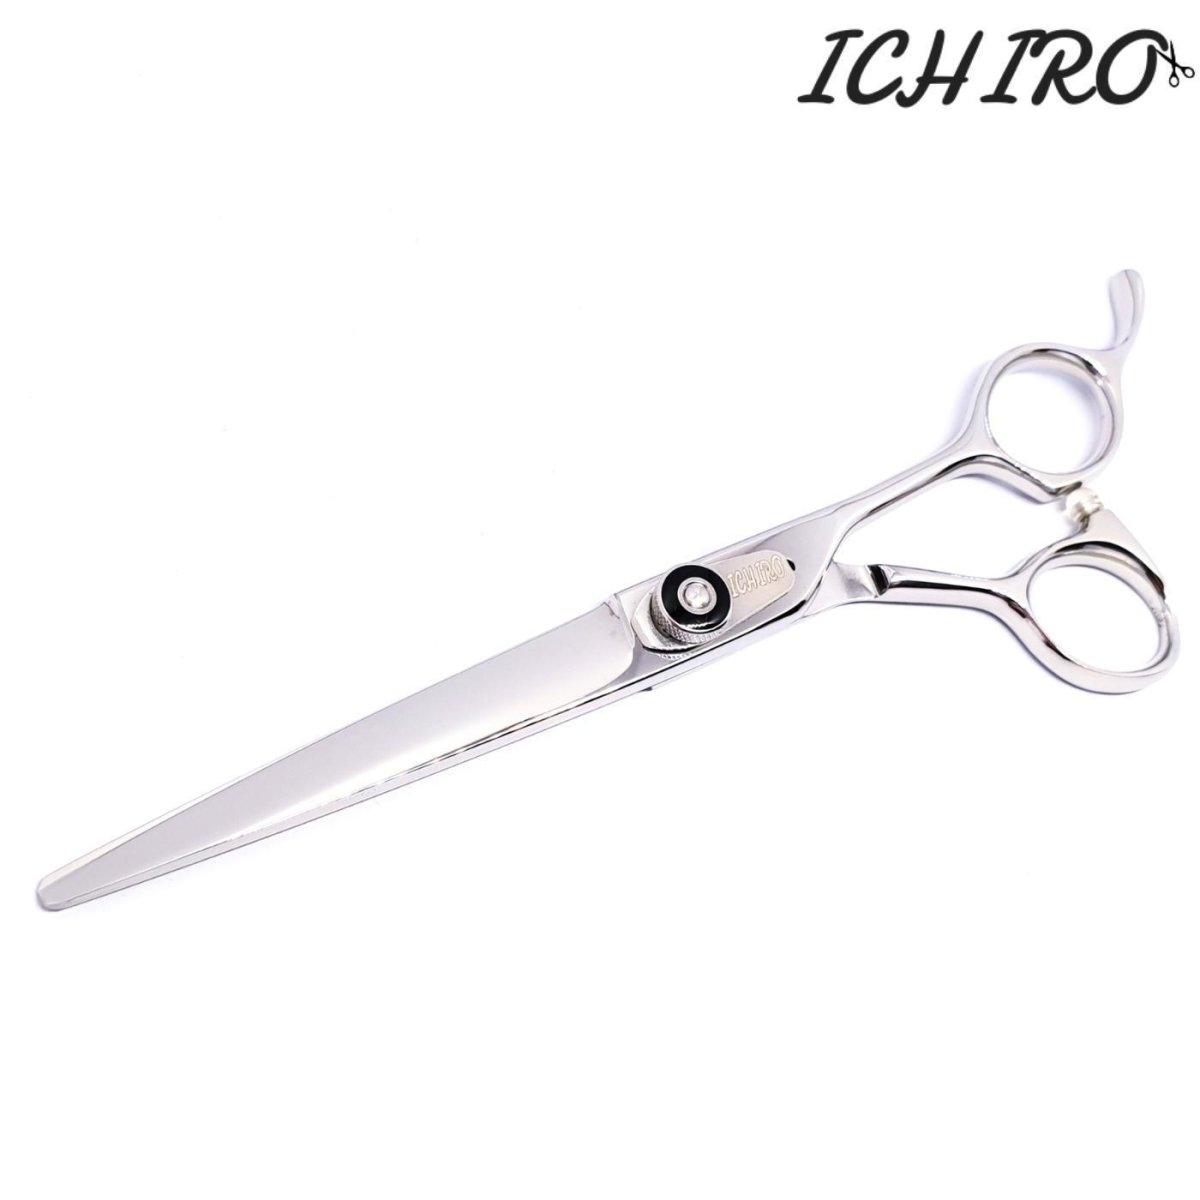 Ichiro K10 Hair Cutting Shears - Japan Scissors